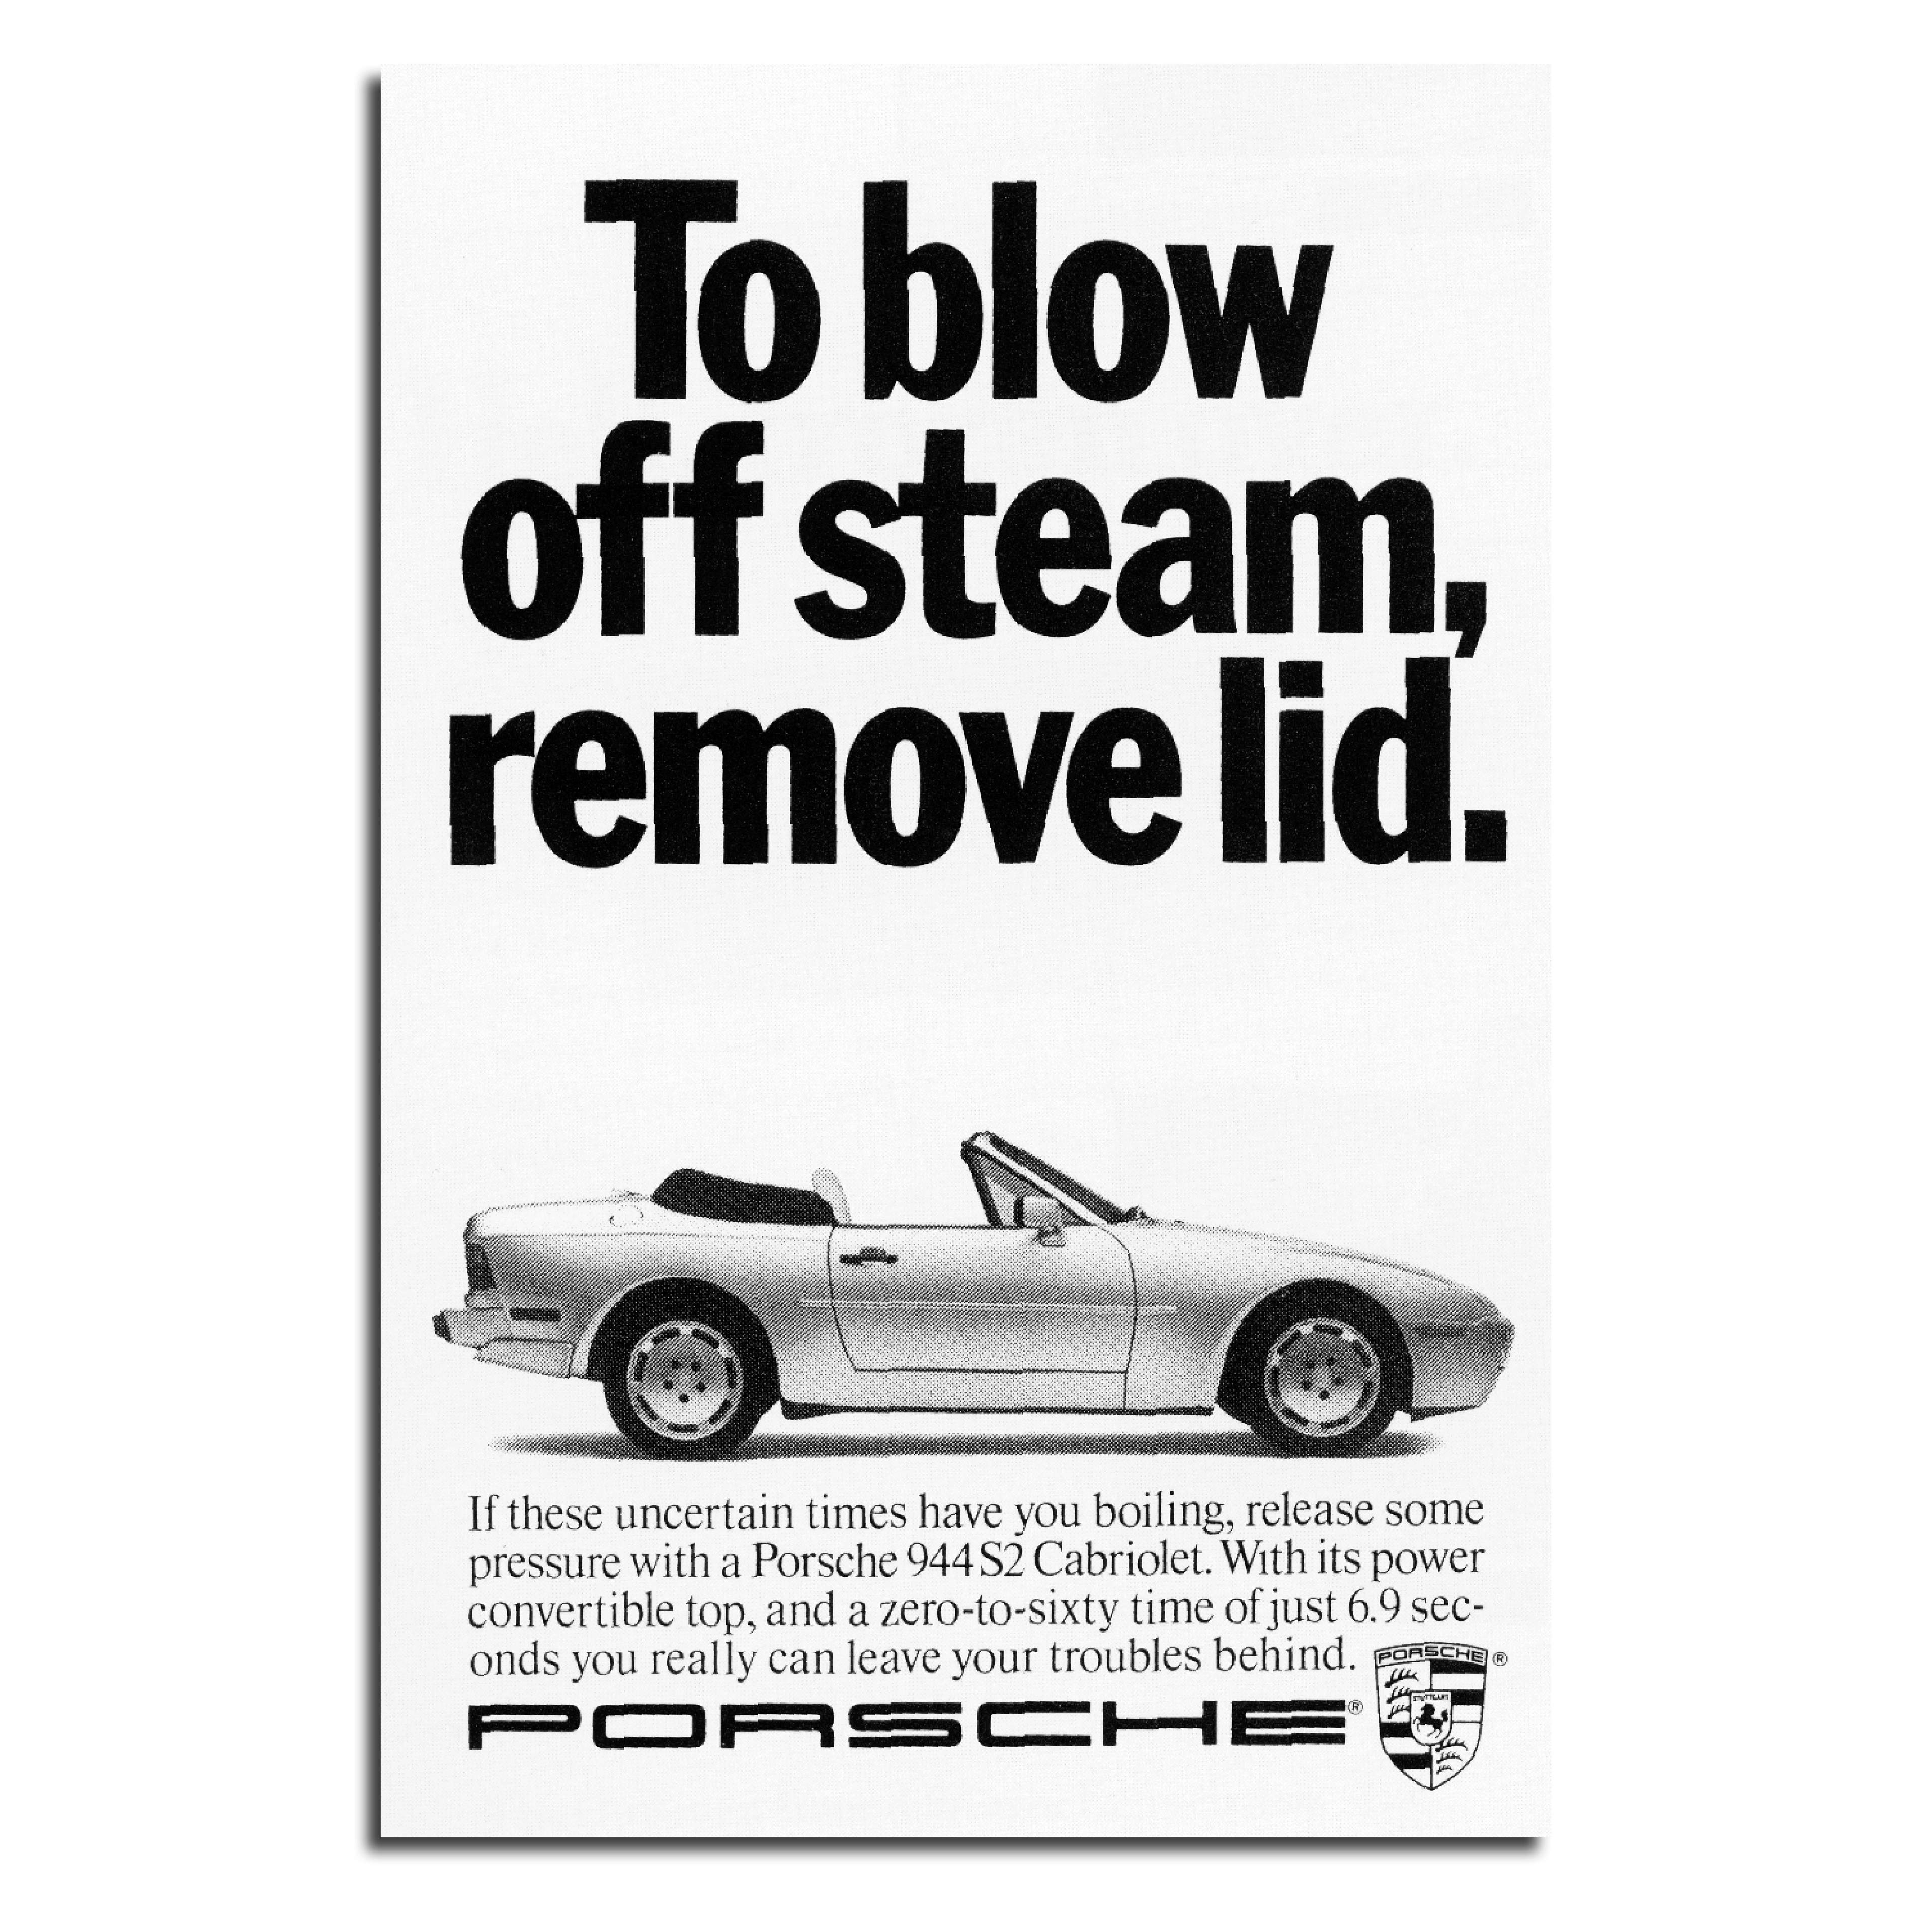 Photo of an open-top Porsche. Award-winning headline about blowing off steam.